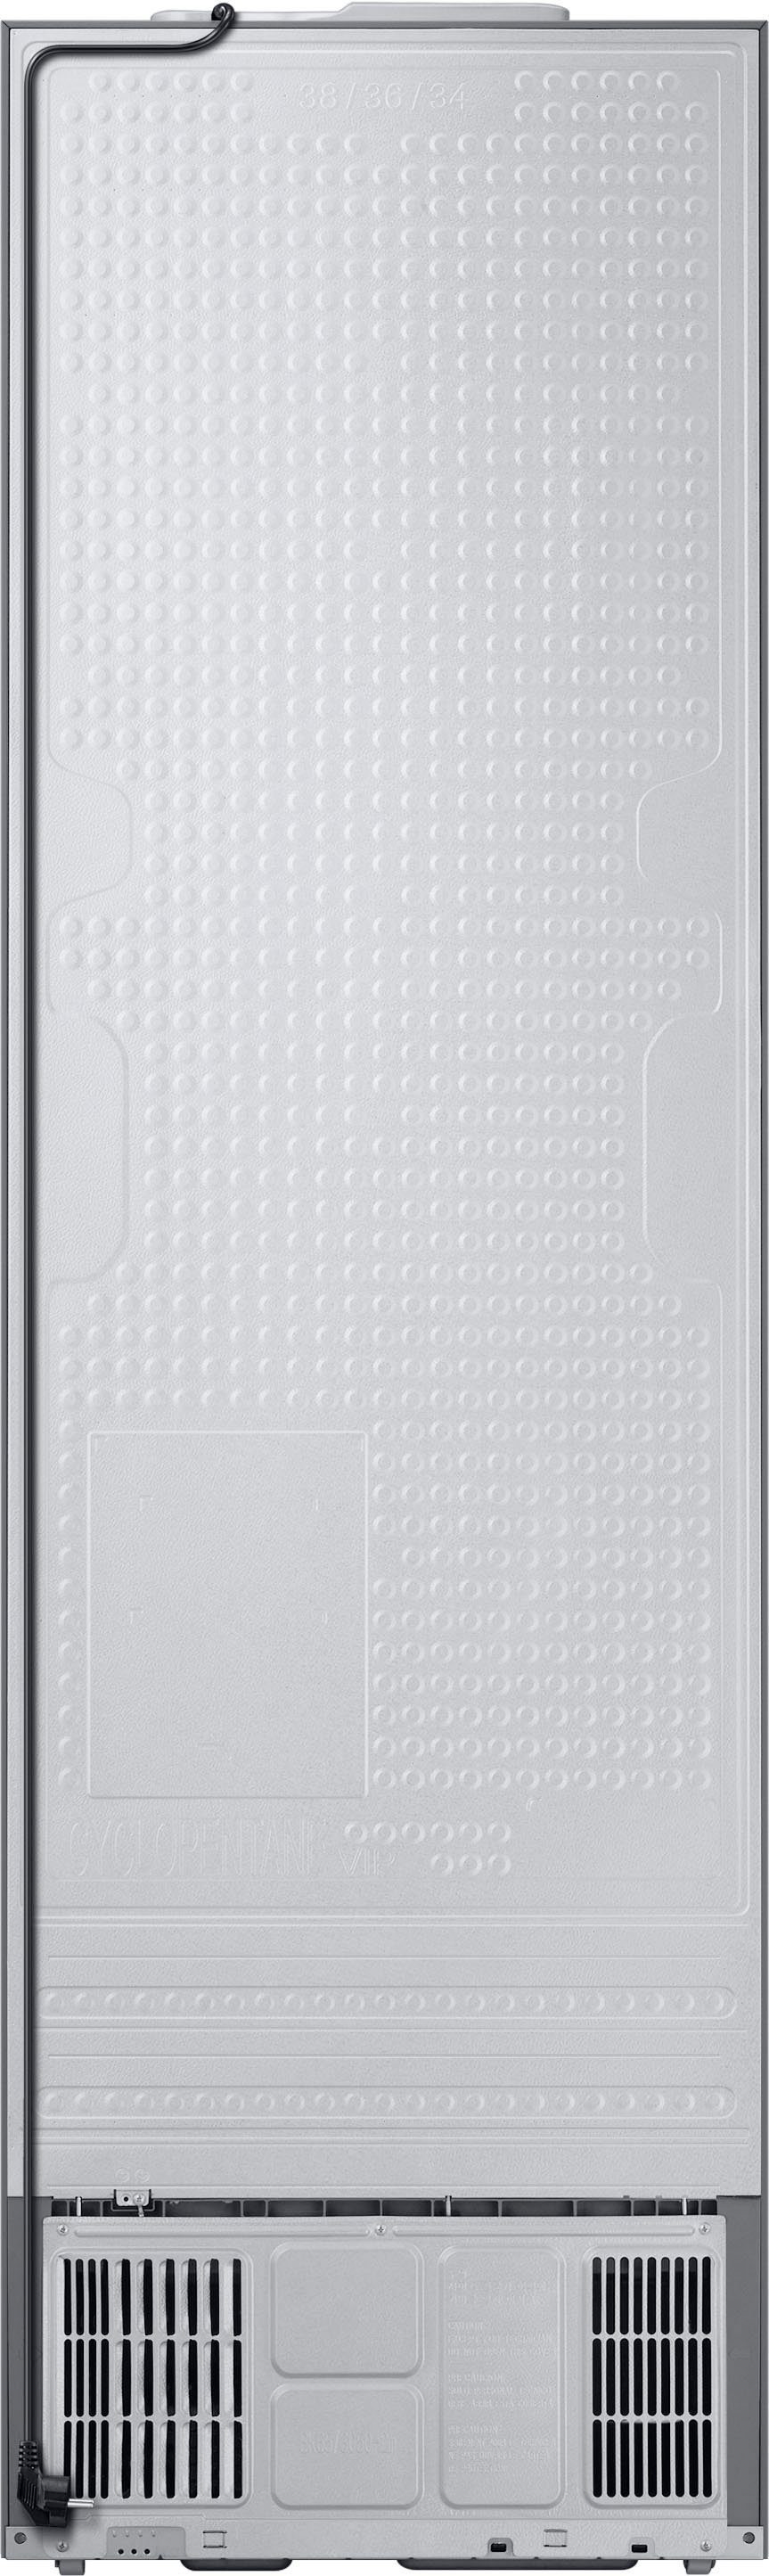 Samsung Kühl-/Gefrierkombination RL38T600CSA, hoch, 203,0 cm 59,5 cm breit